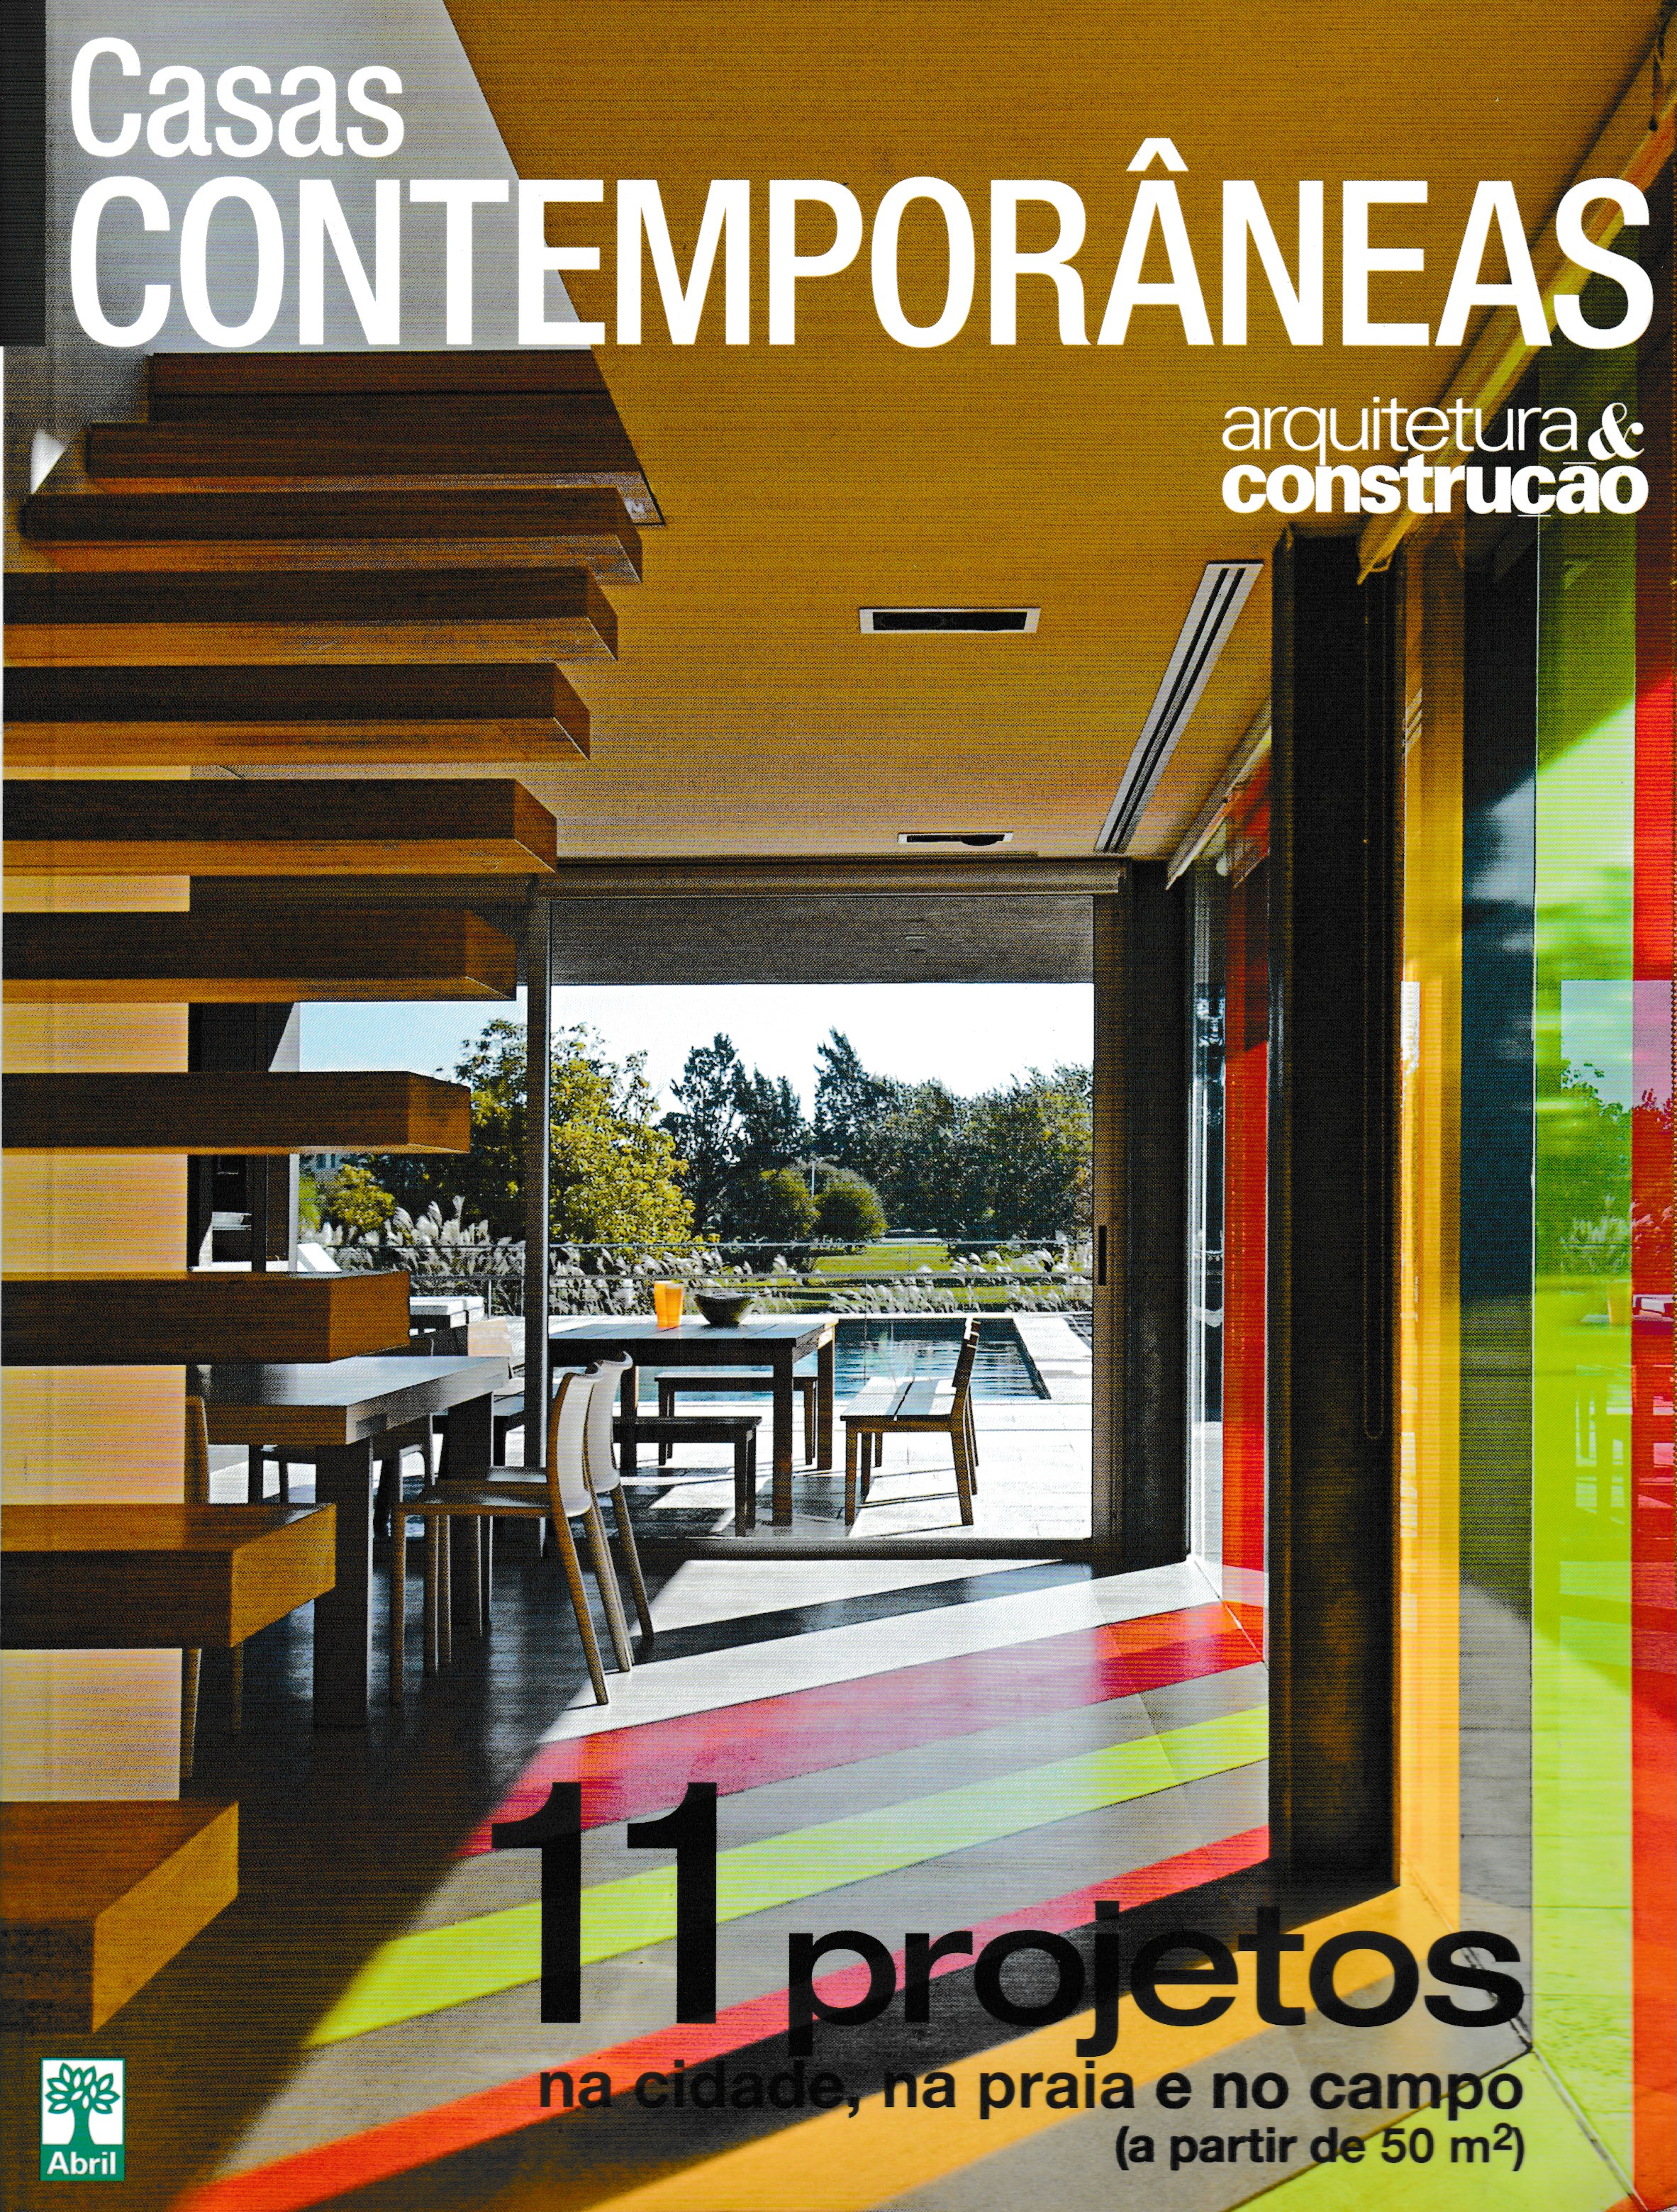 Revista Arquitetura & Construçao - Casas Contemporâneas 